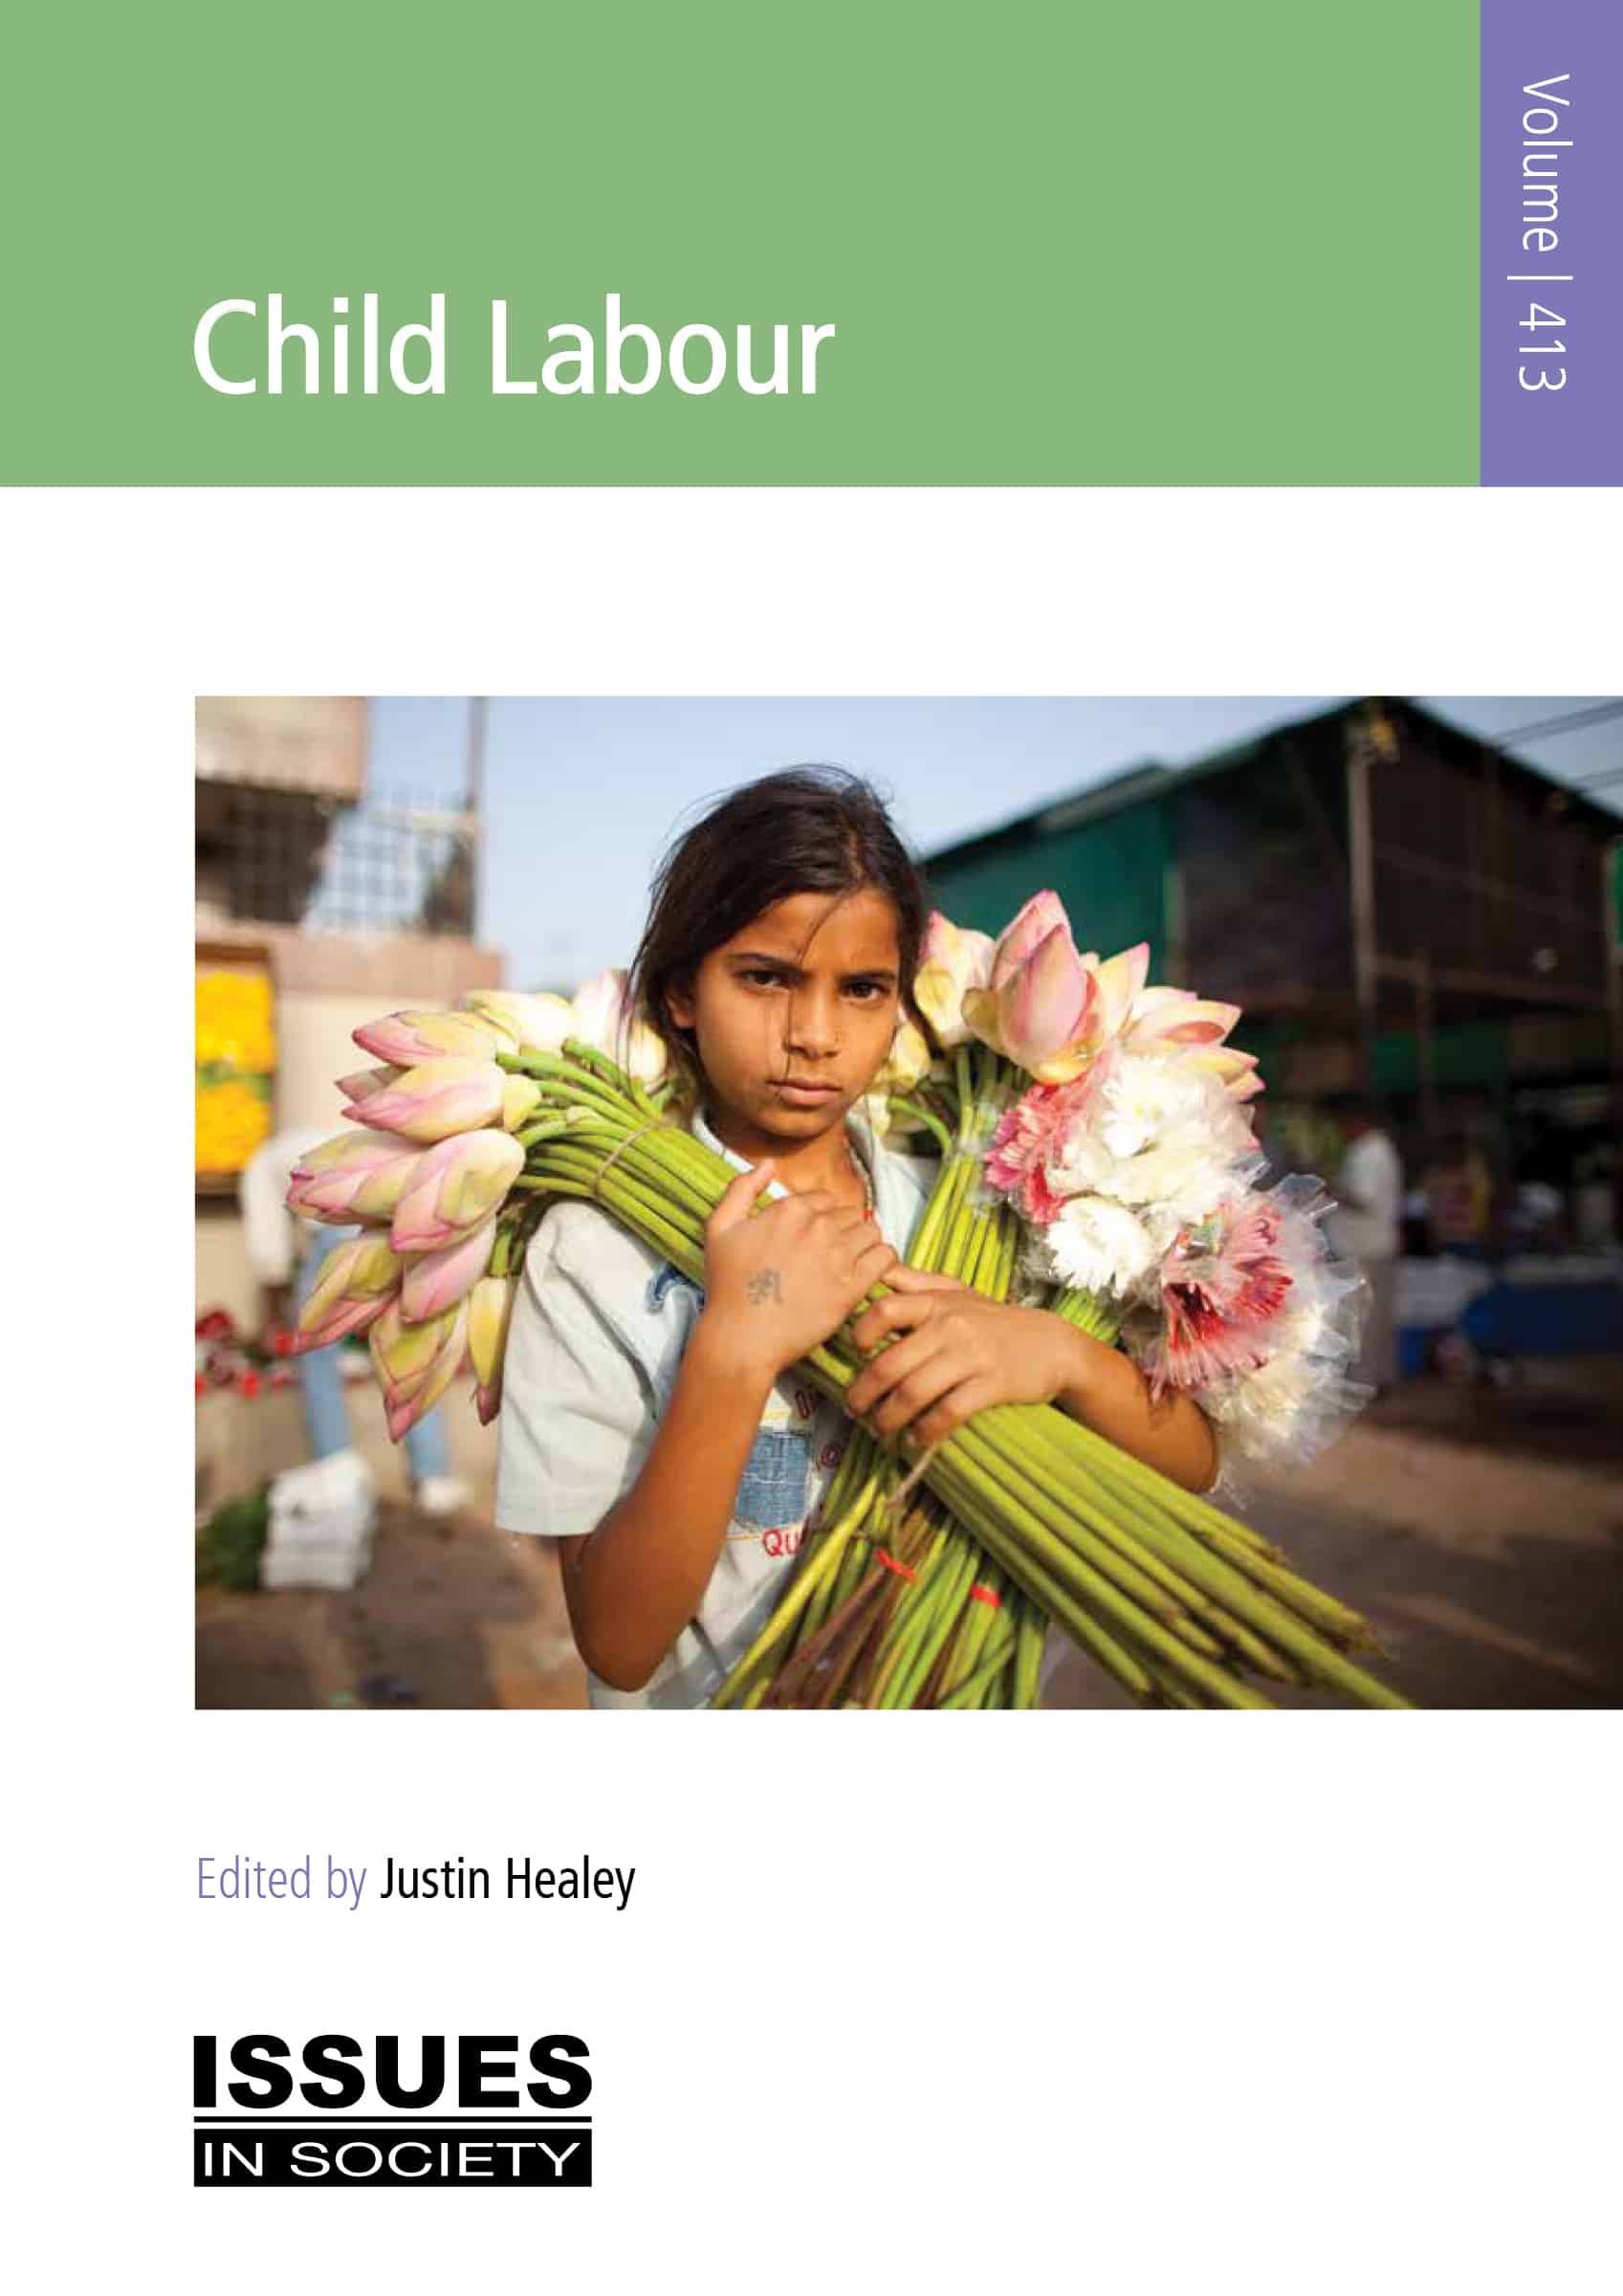 case study about child labour